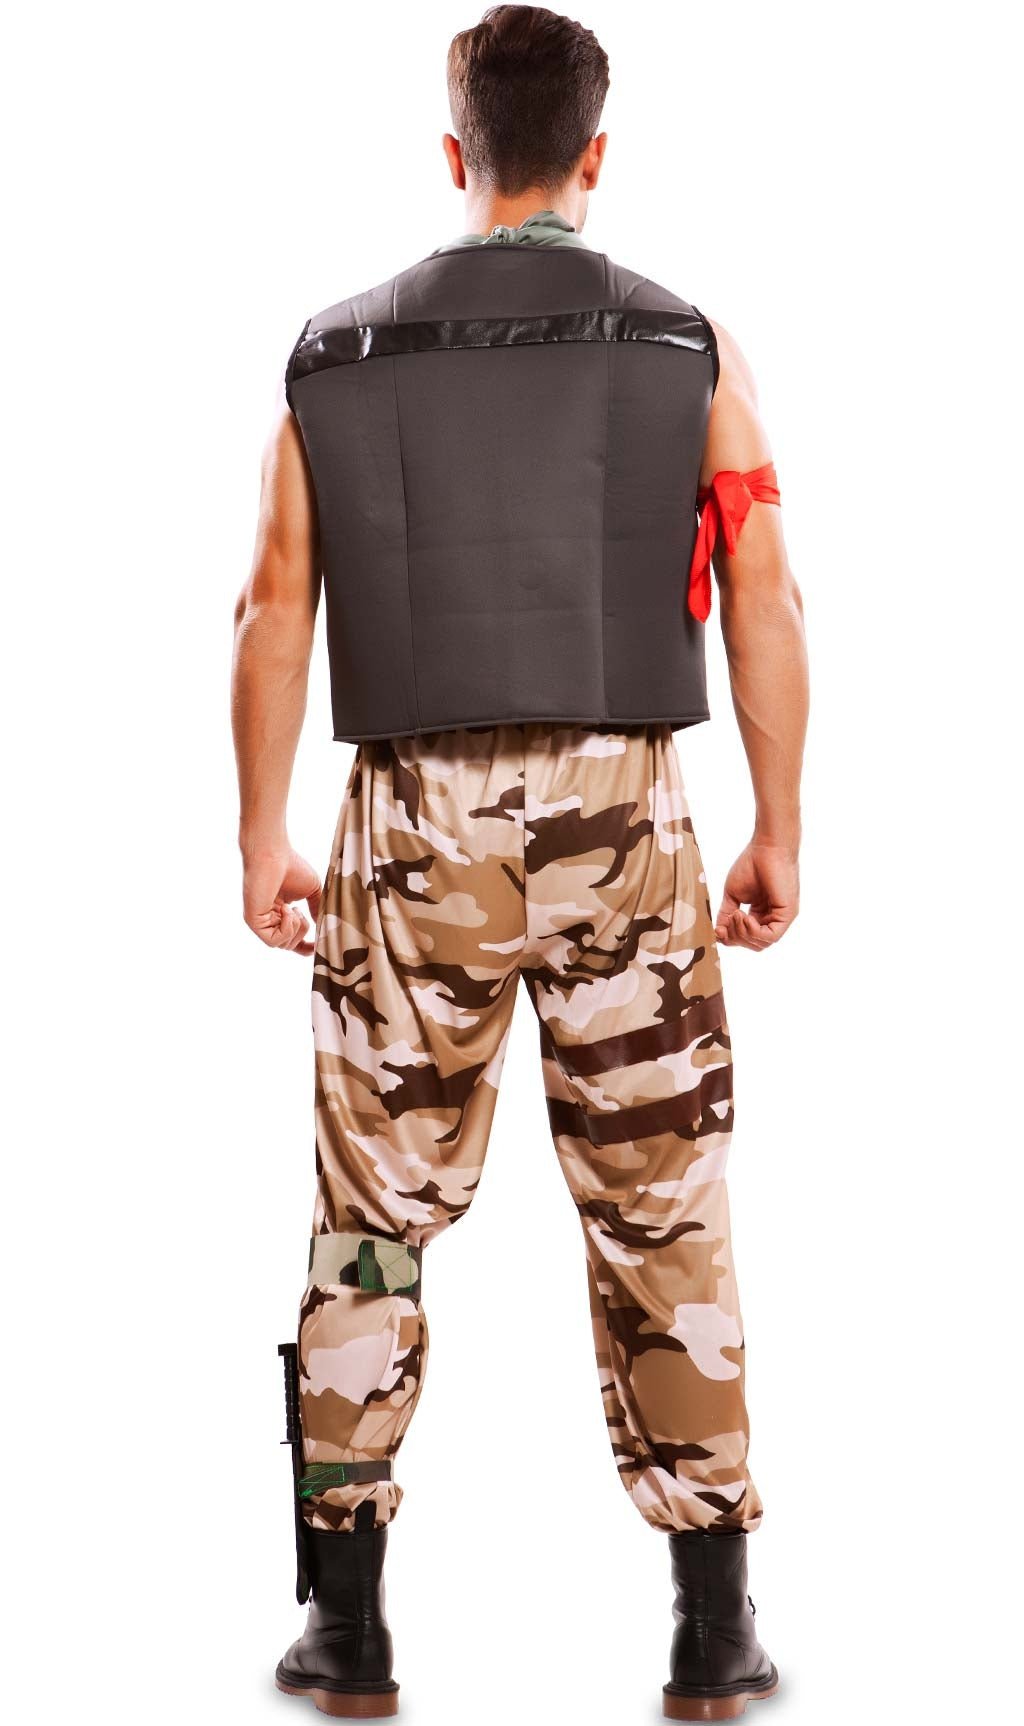 Disfraz militar para hombre: Disfraces adultos,y disfraces